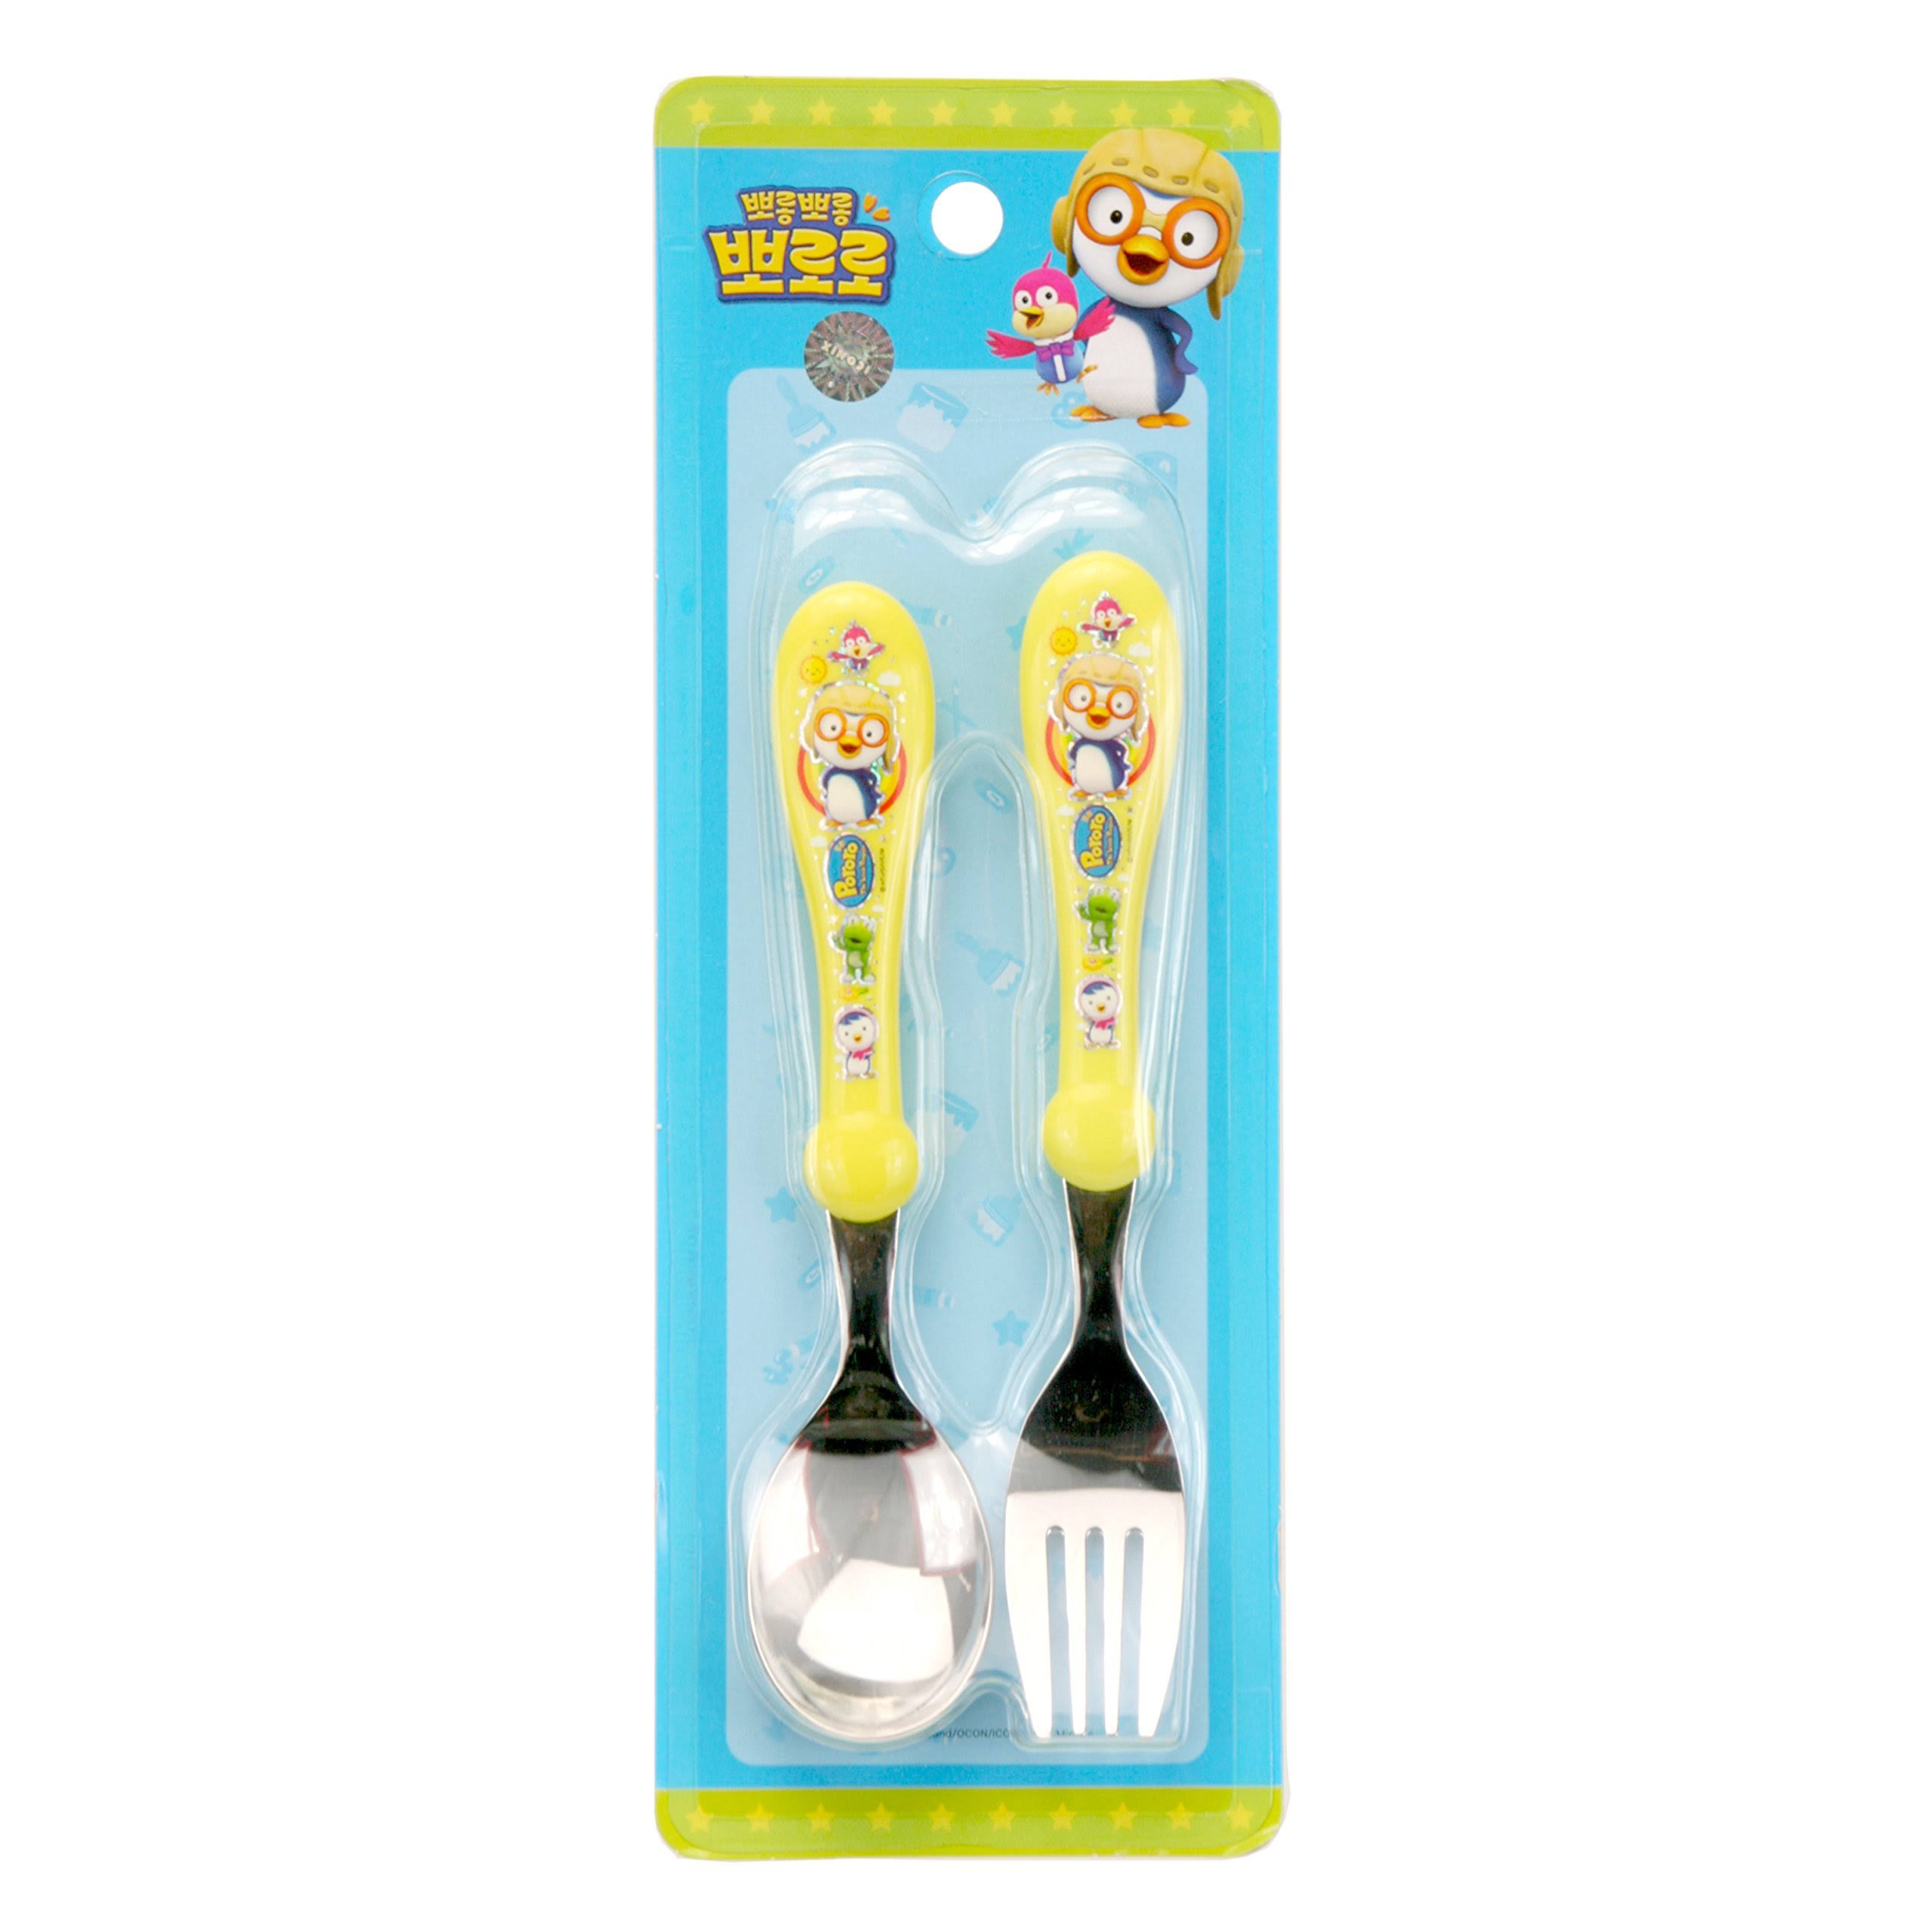 SK Co Pororo Stainless Spoon & Fork Set for Kids EZ70703